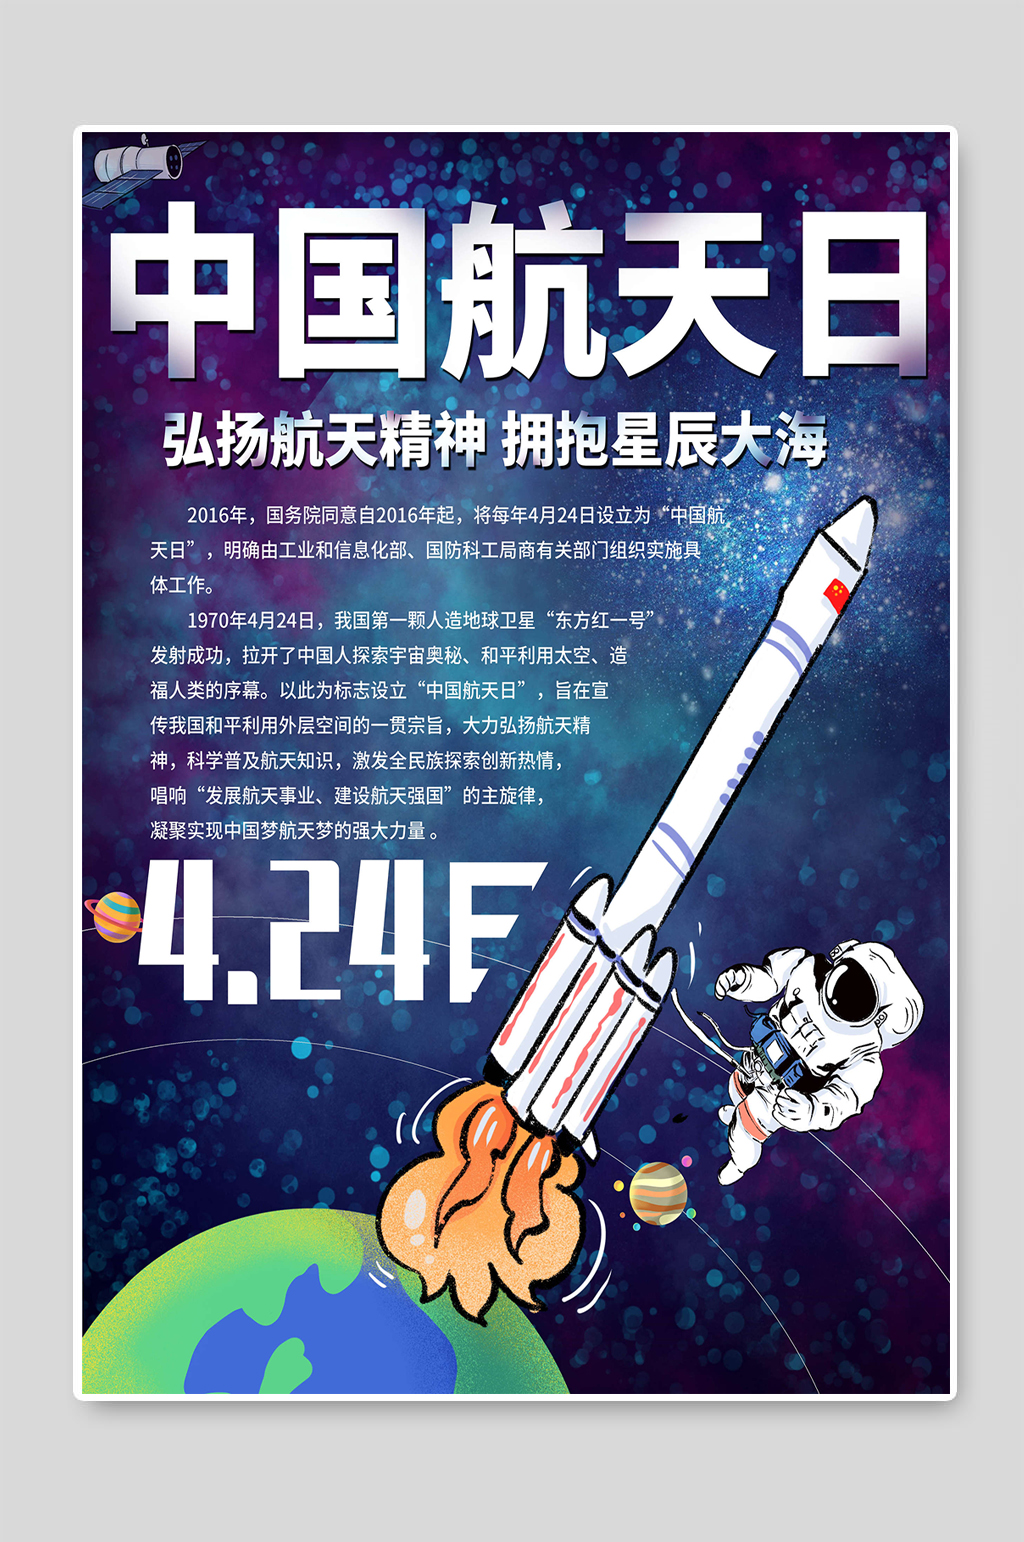 中国航天日宣传标语图片